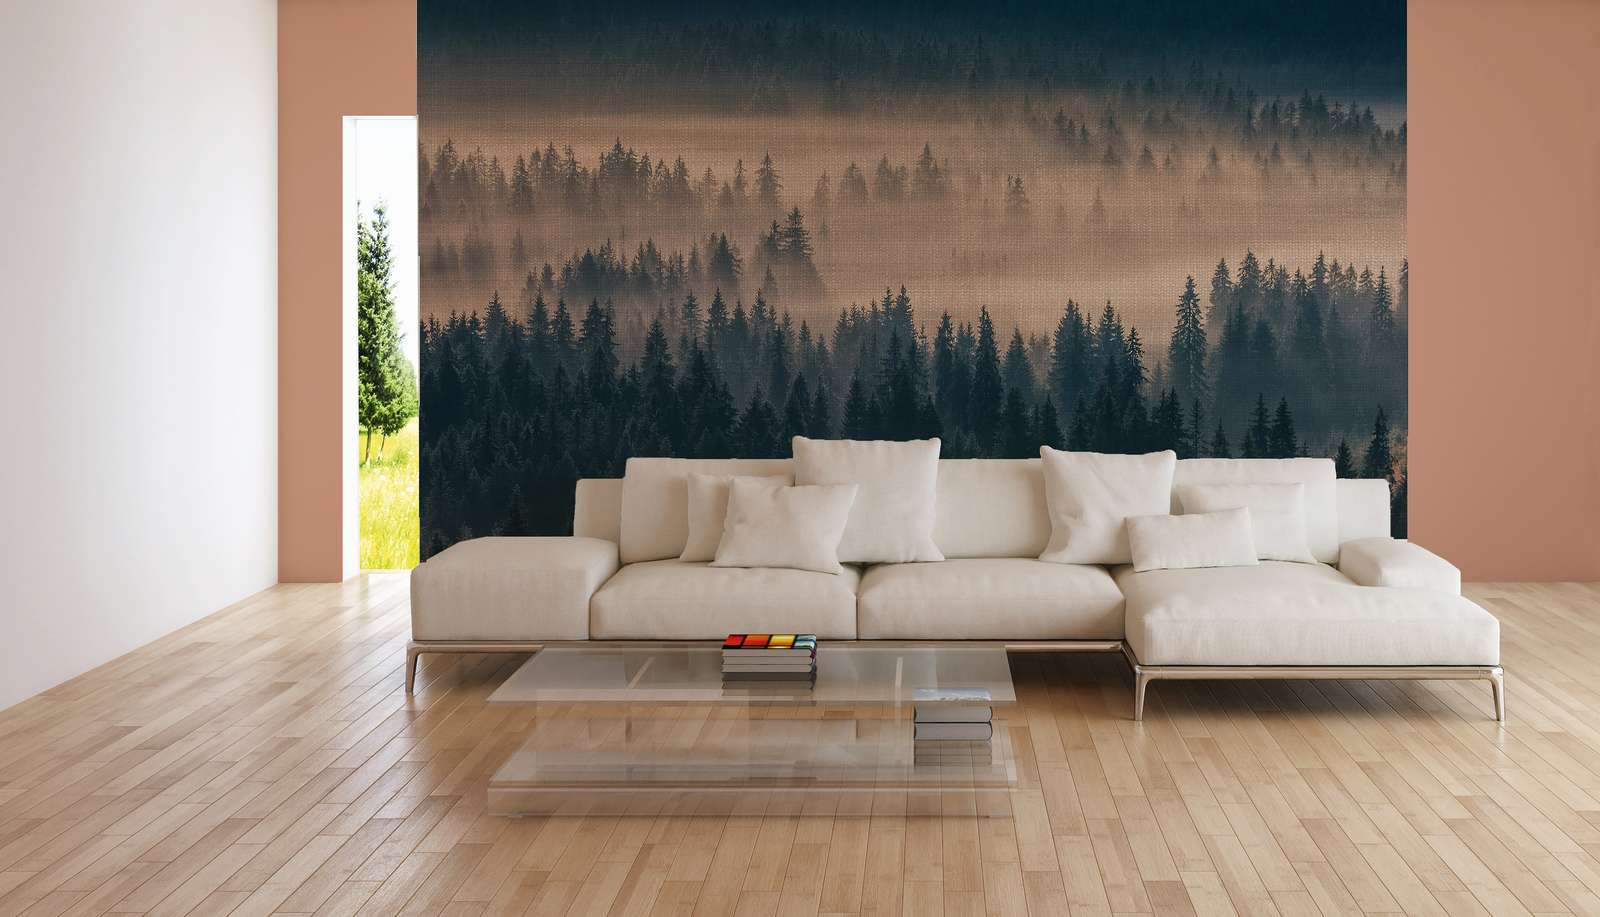             Papier peint avec paysage forestier sur toile de lin - bleu, beige
        